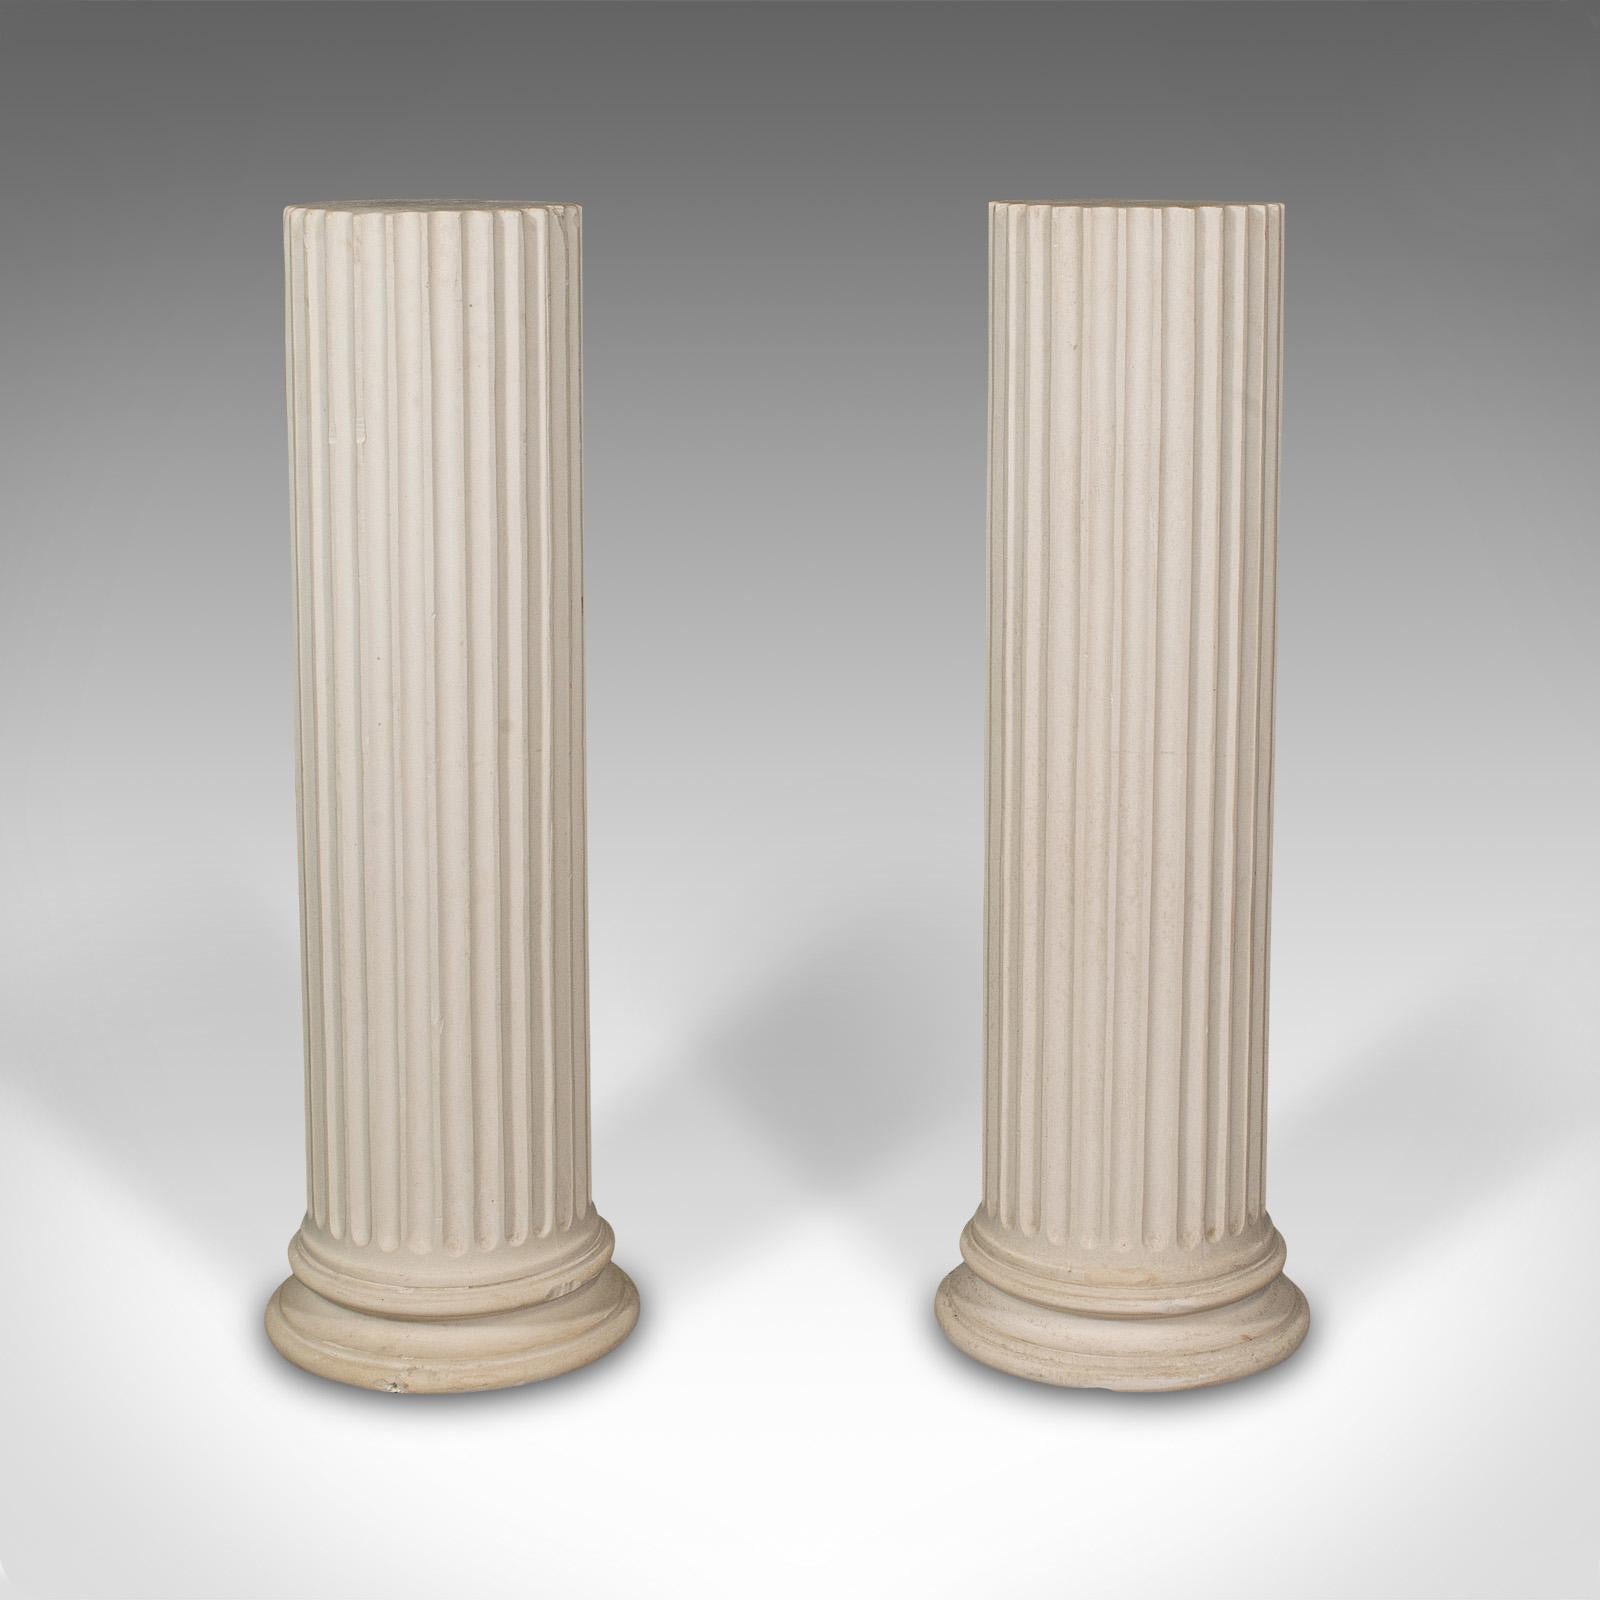 Il s'agit d'une paire de colonnes de présentation cannelées vintage. Jardinière en plâtre de style classique, datant de la fin du 20e siècle.

Colonnes d'allure classique, idéales pour l'élégance décorative ou comme présentoirs.
Patine